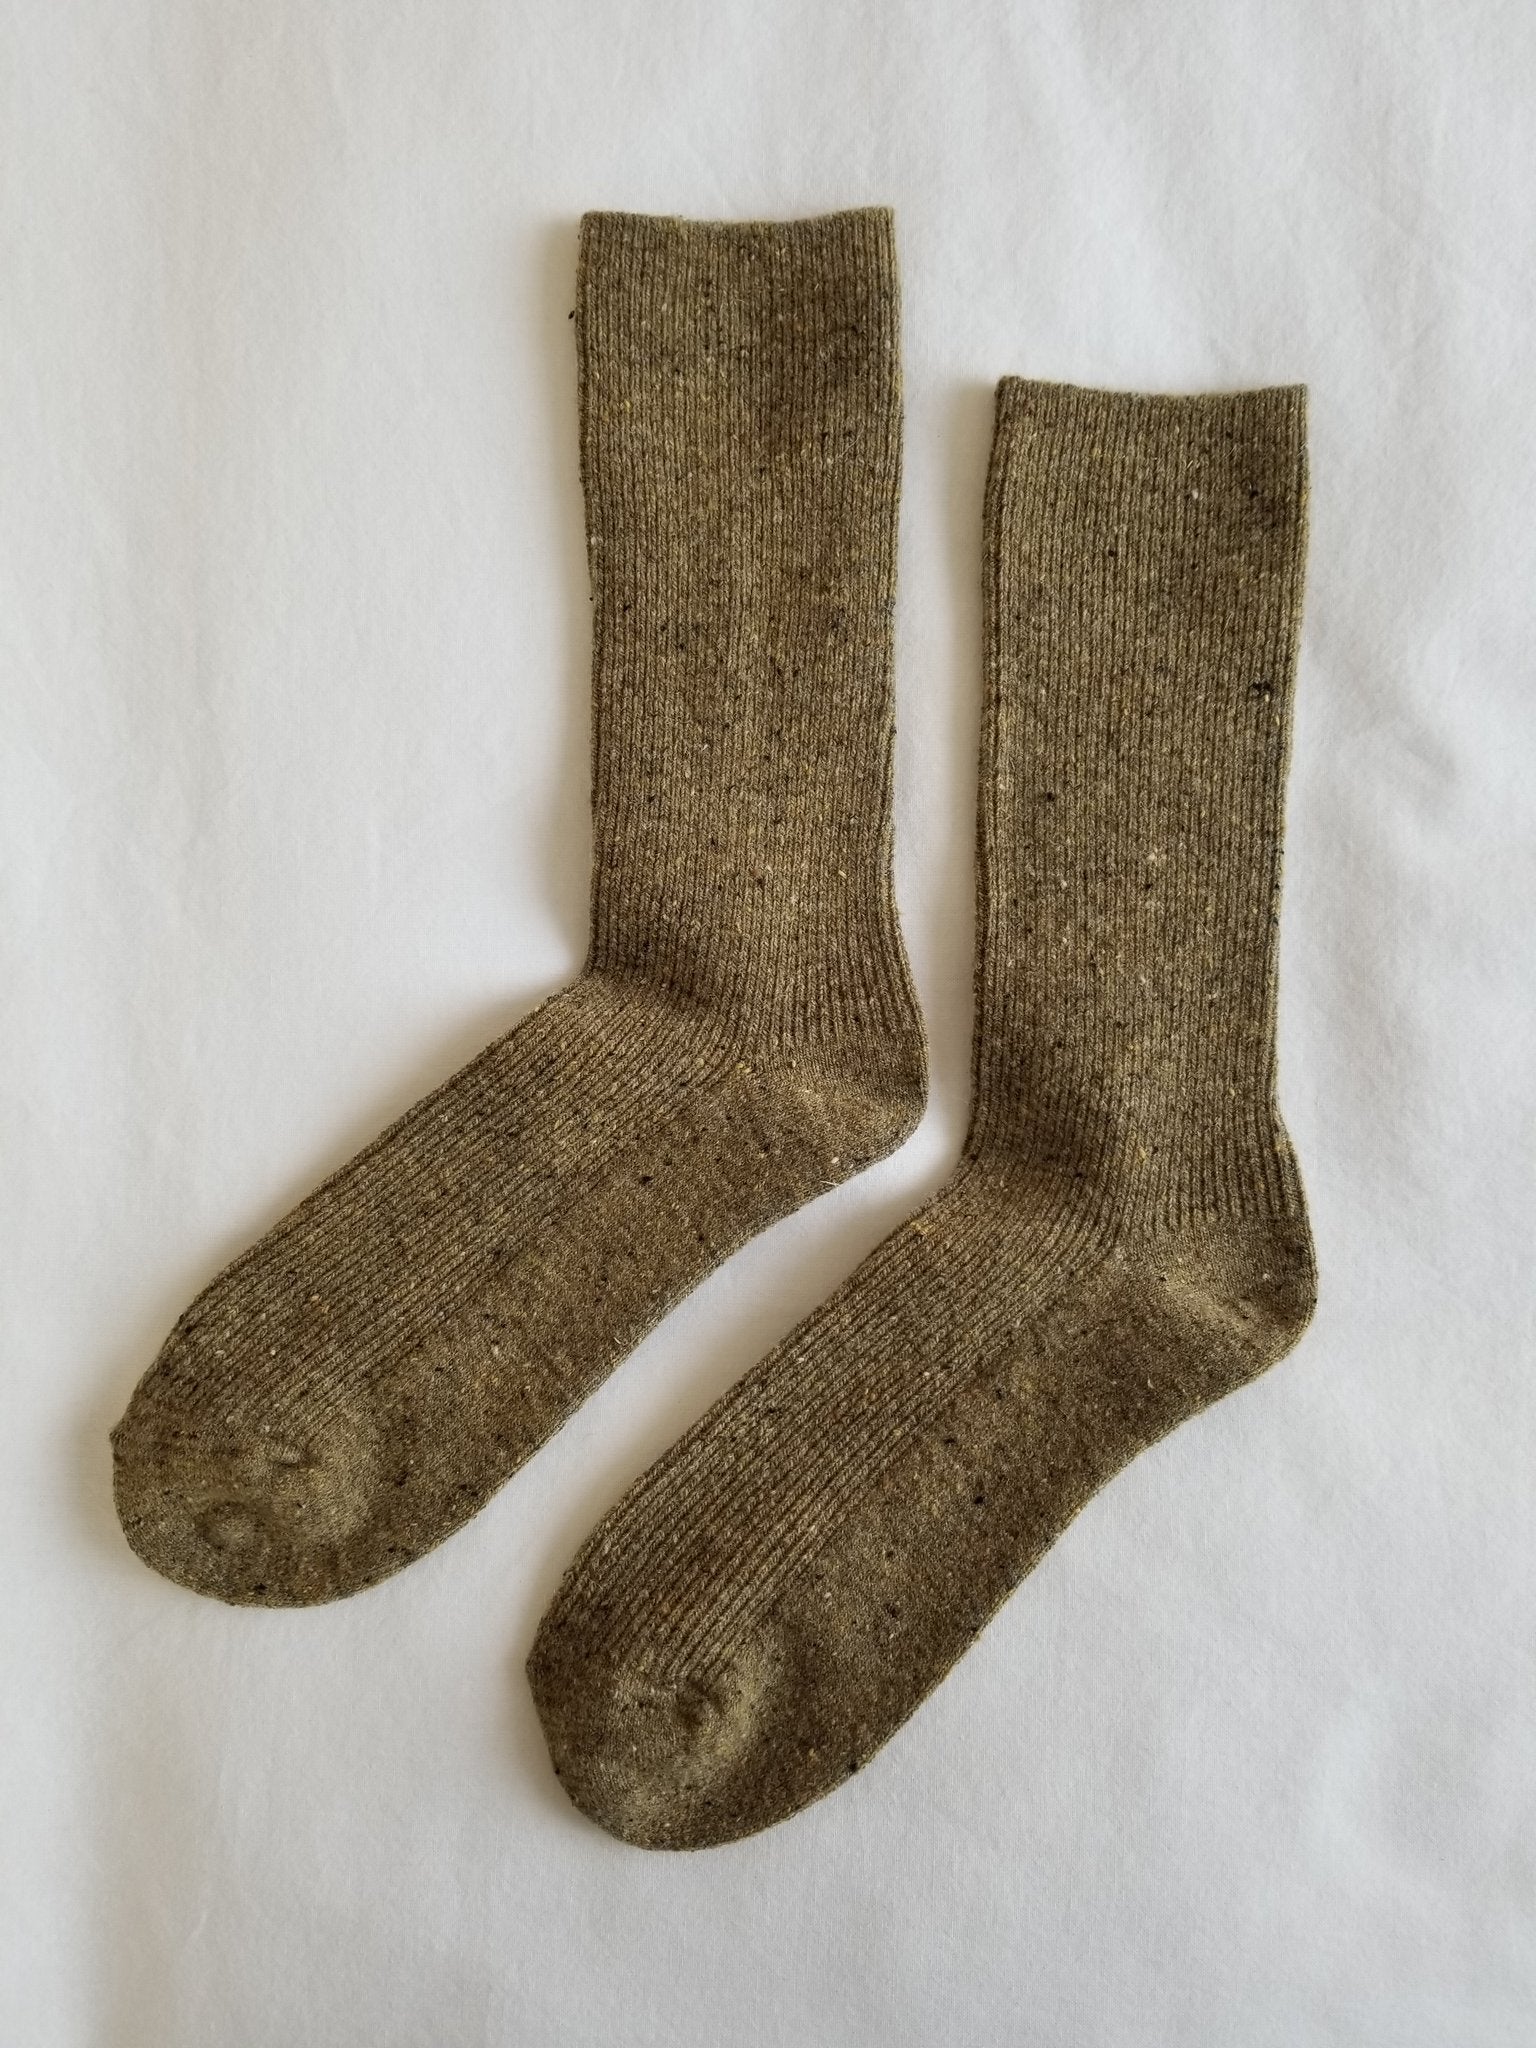 Le Bon Shoppe Wool Snow Socks